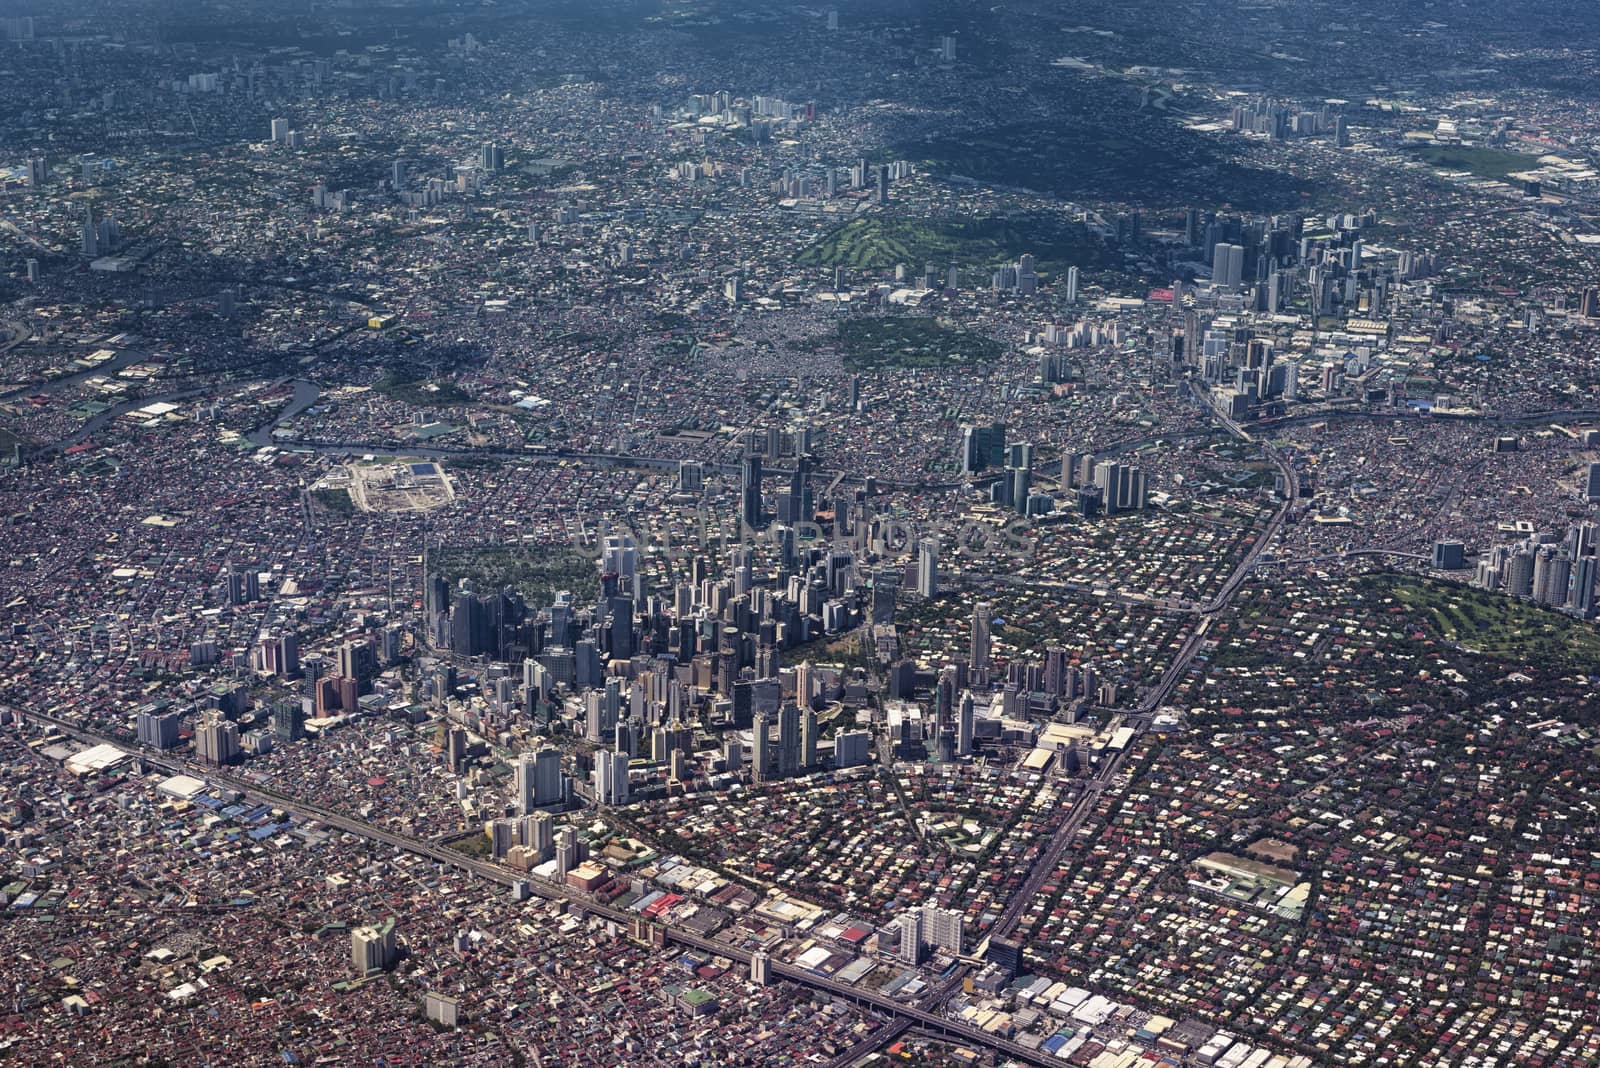 Metro Manila Aerail View .